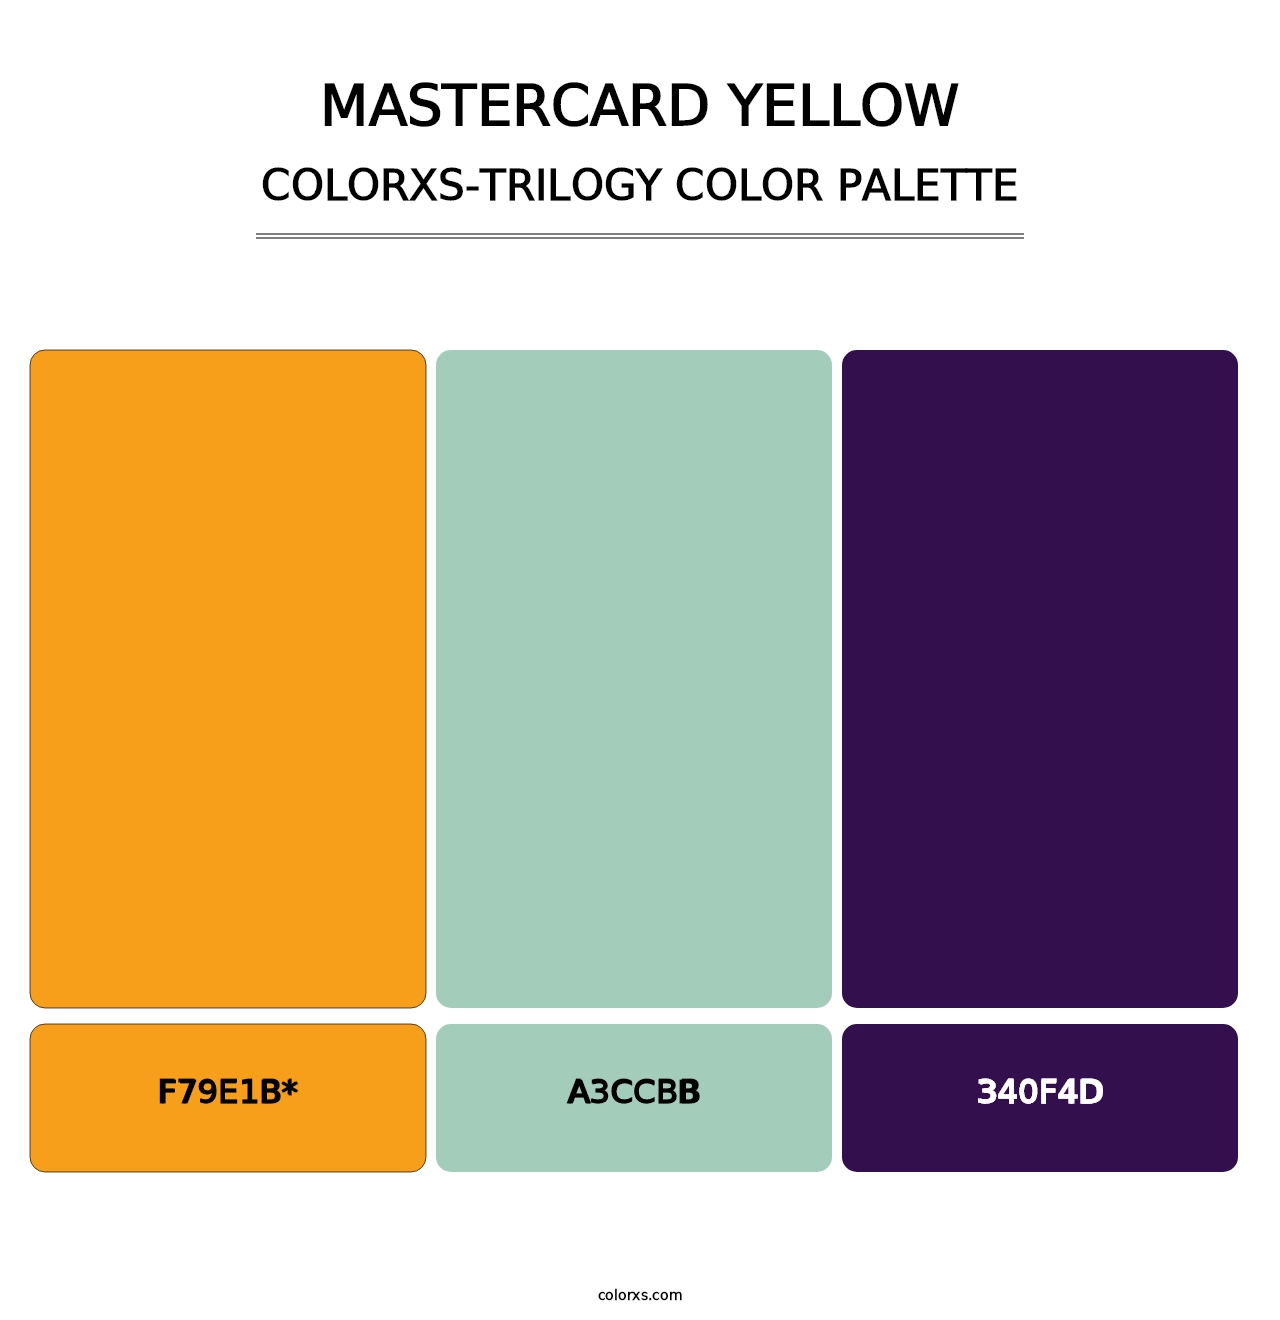 Mastercard Yellow - Colorxs Trilogy Palette